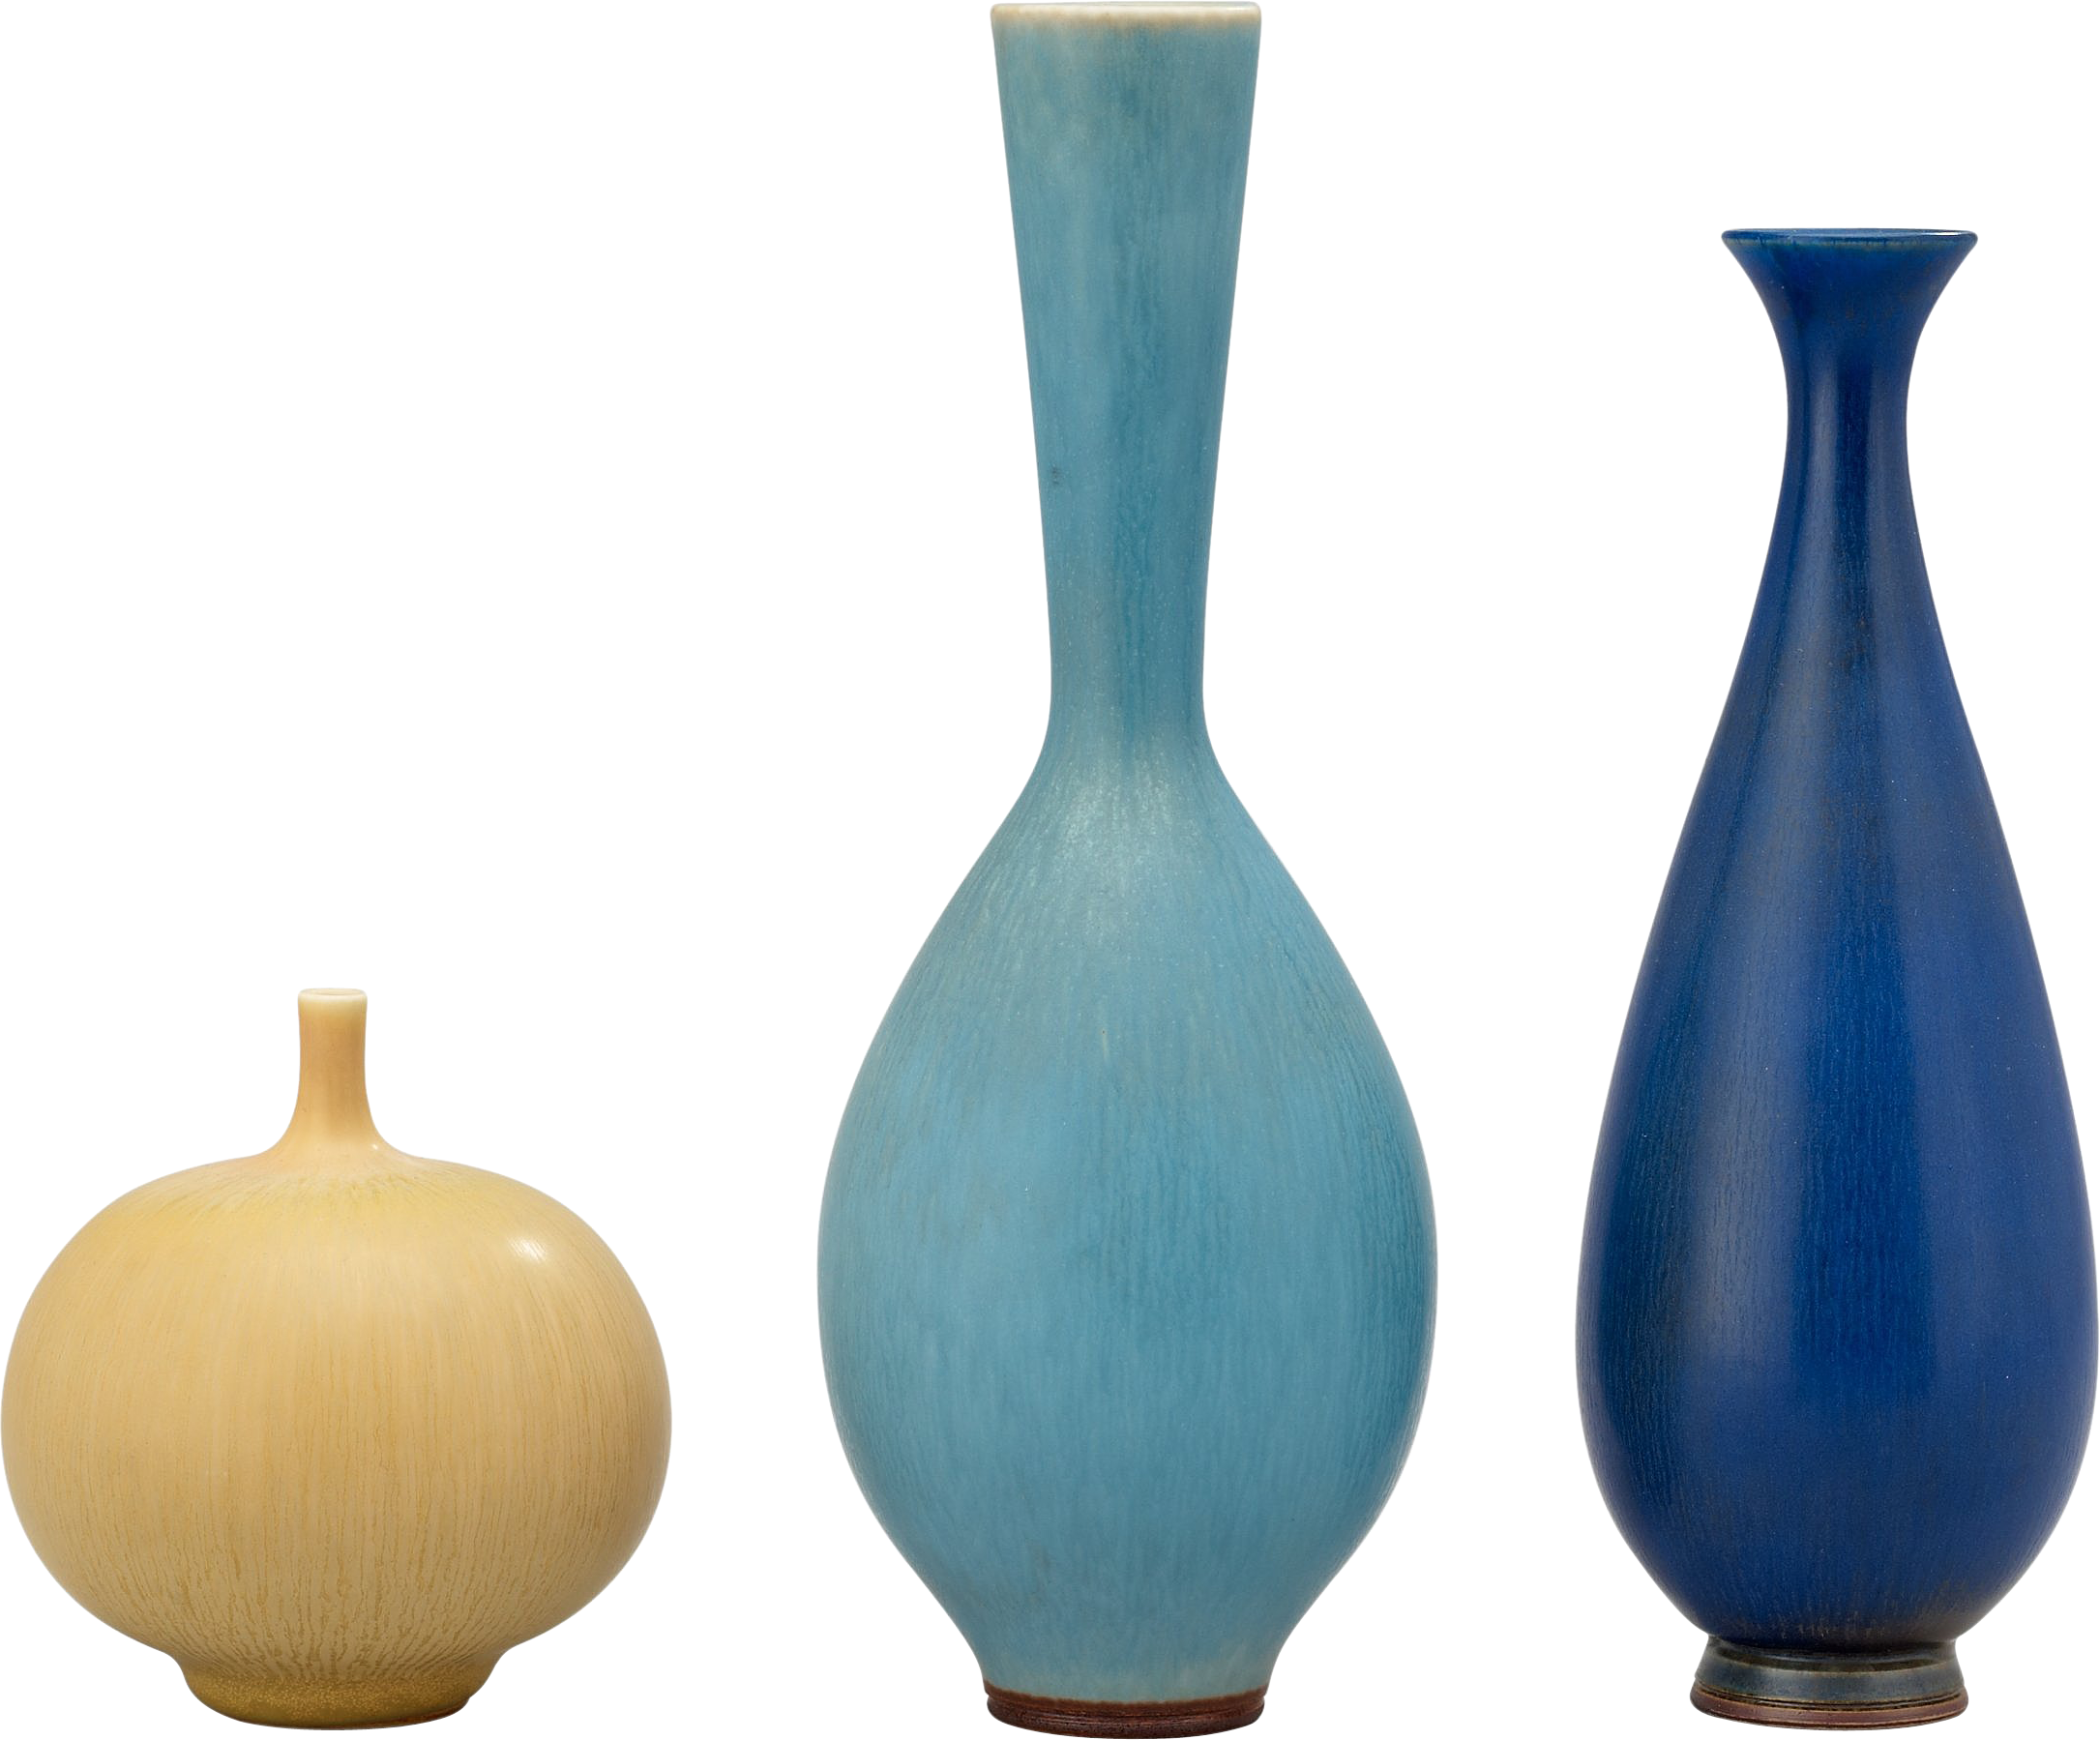 Vase PNG images free download.